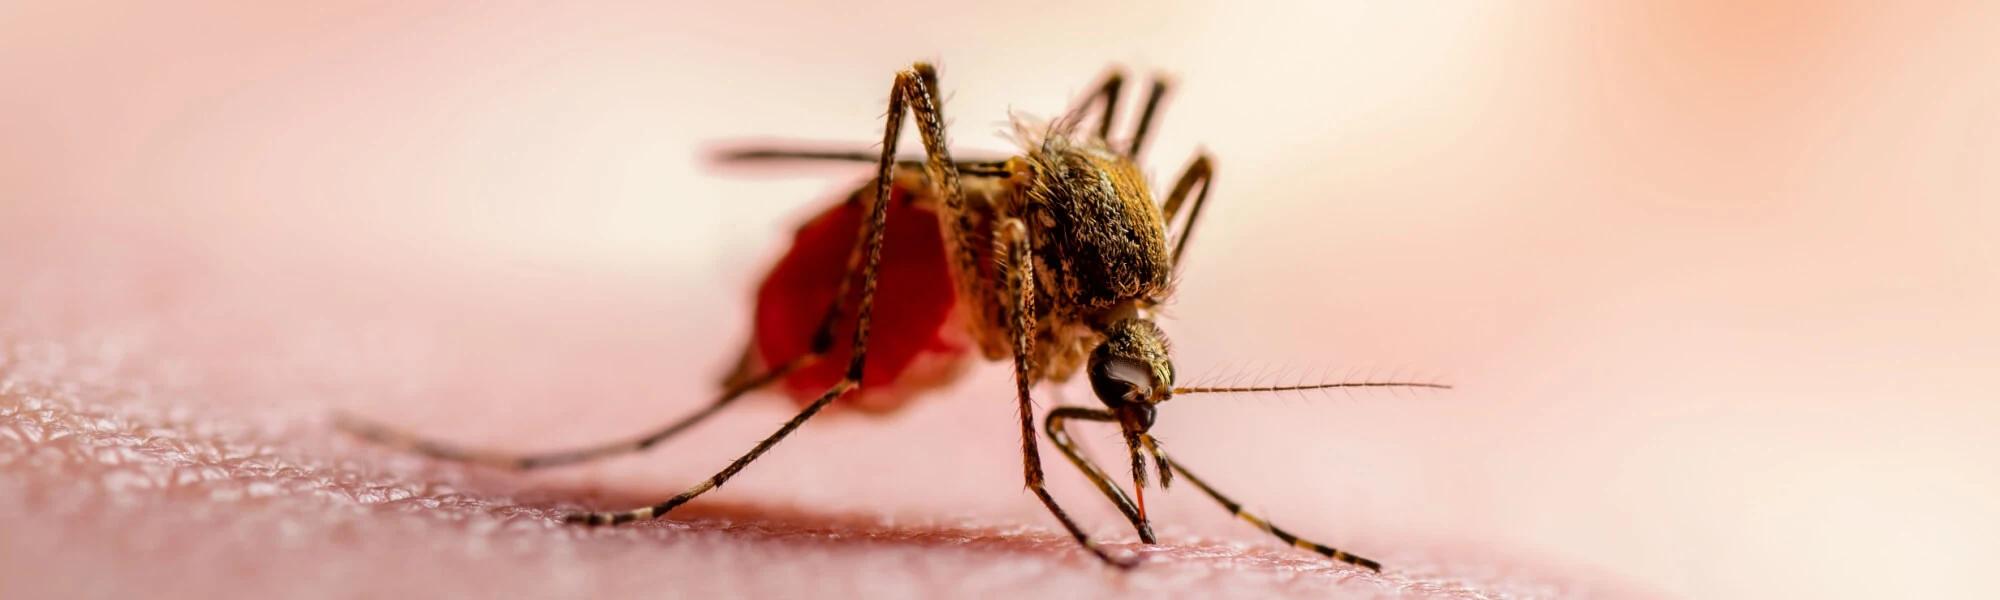 Malaria - objawy, leczenie, co to za choroba?